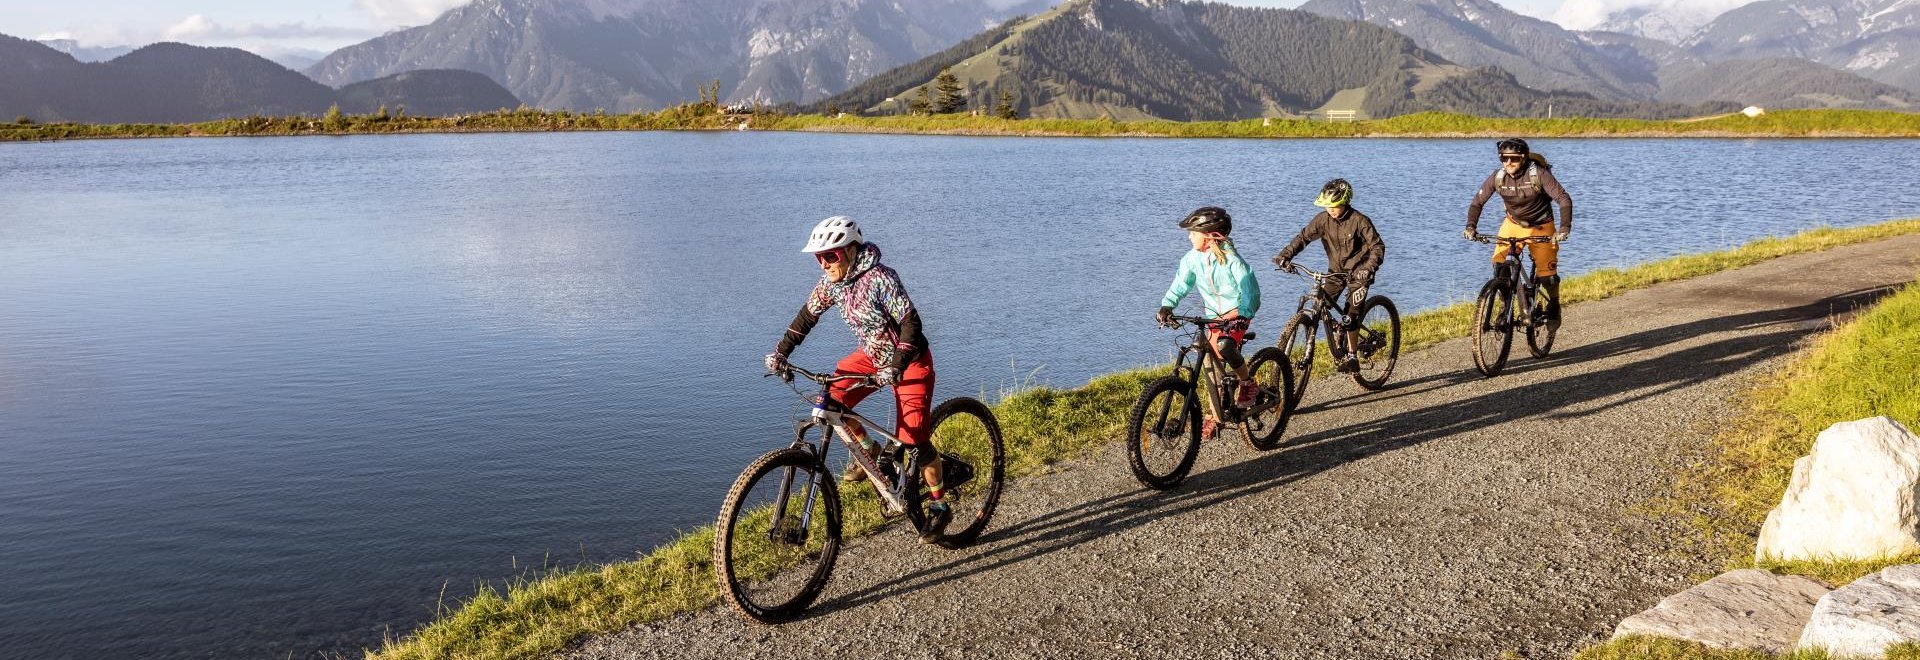 Familie beim Biken am See in Saalbach Hinterglemm